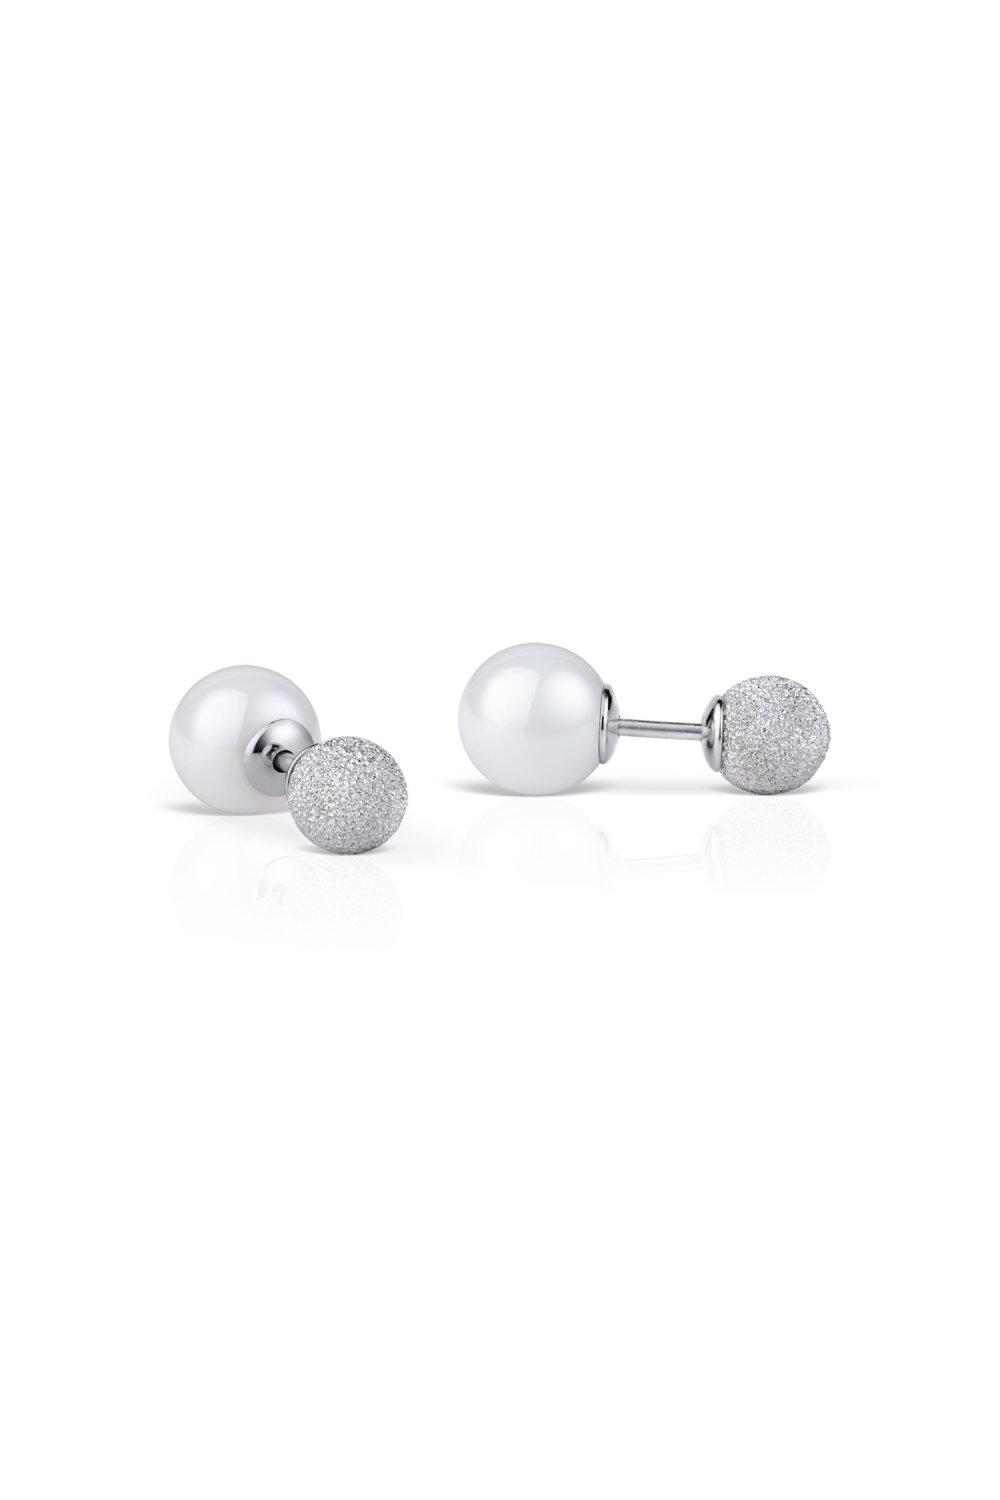 petite stainless steel earrings - 703-195-05